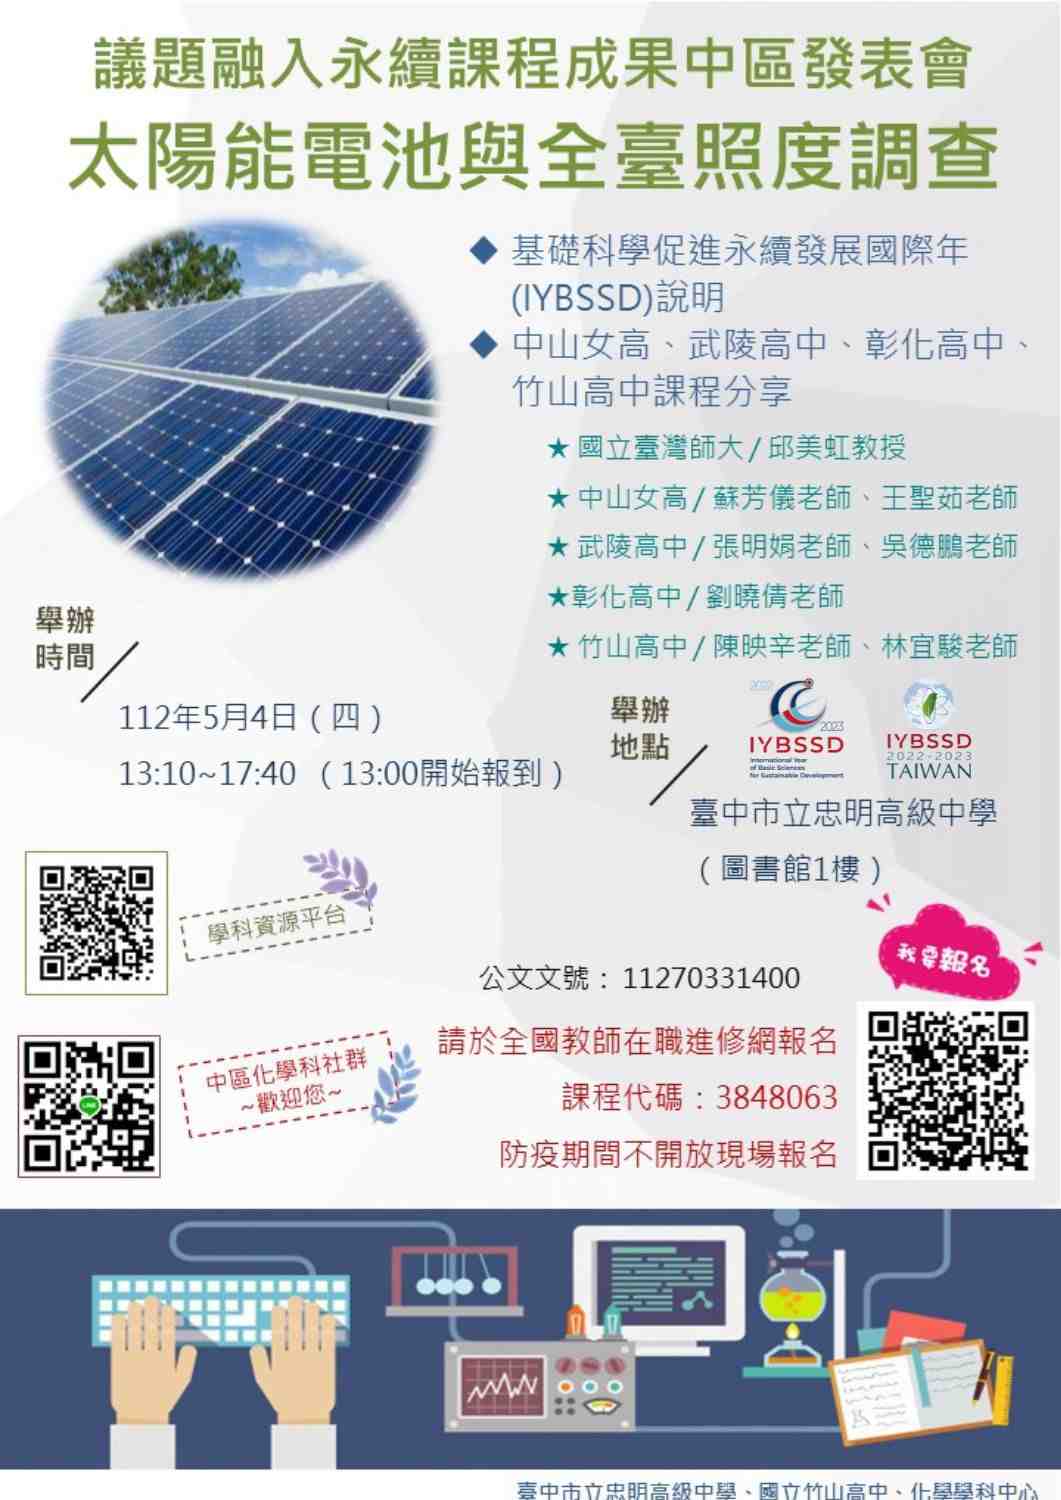 議題融入永續課程成果中區發表會-太陽能電池與全臺照度調查宣傳用圖片/海報